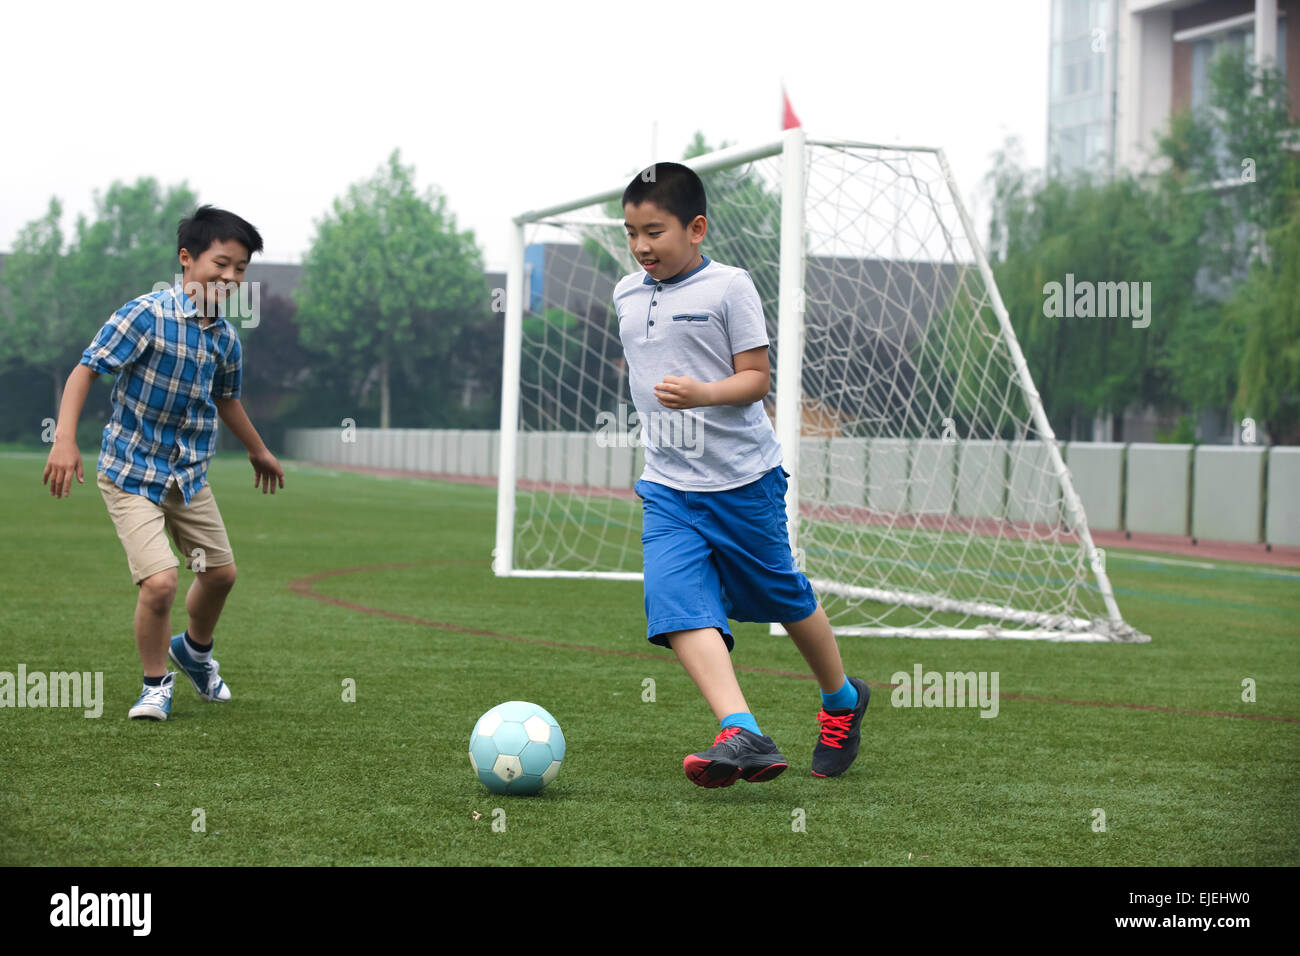 Deux garçons jouent au football sur le terrain de football Banque D'Images